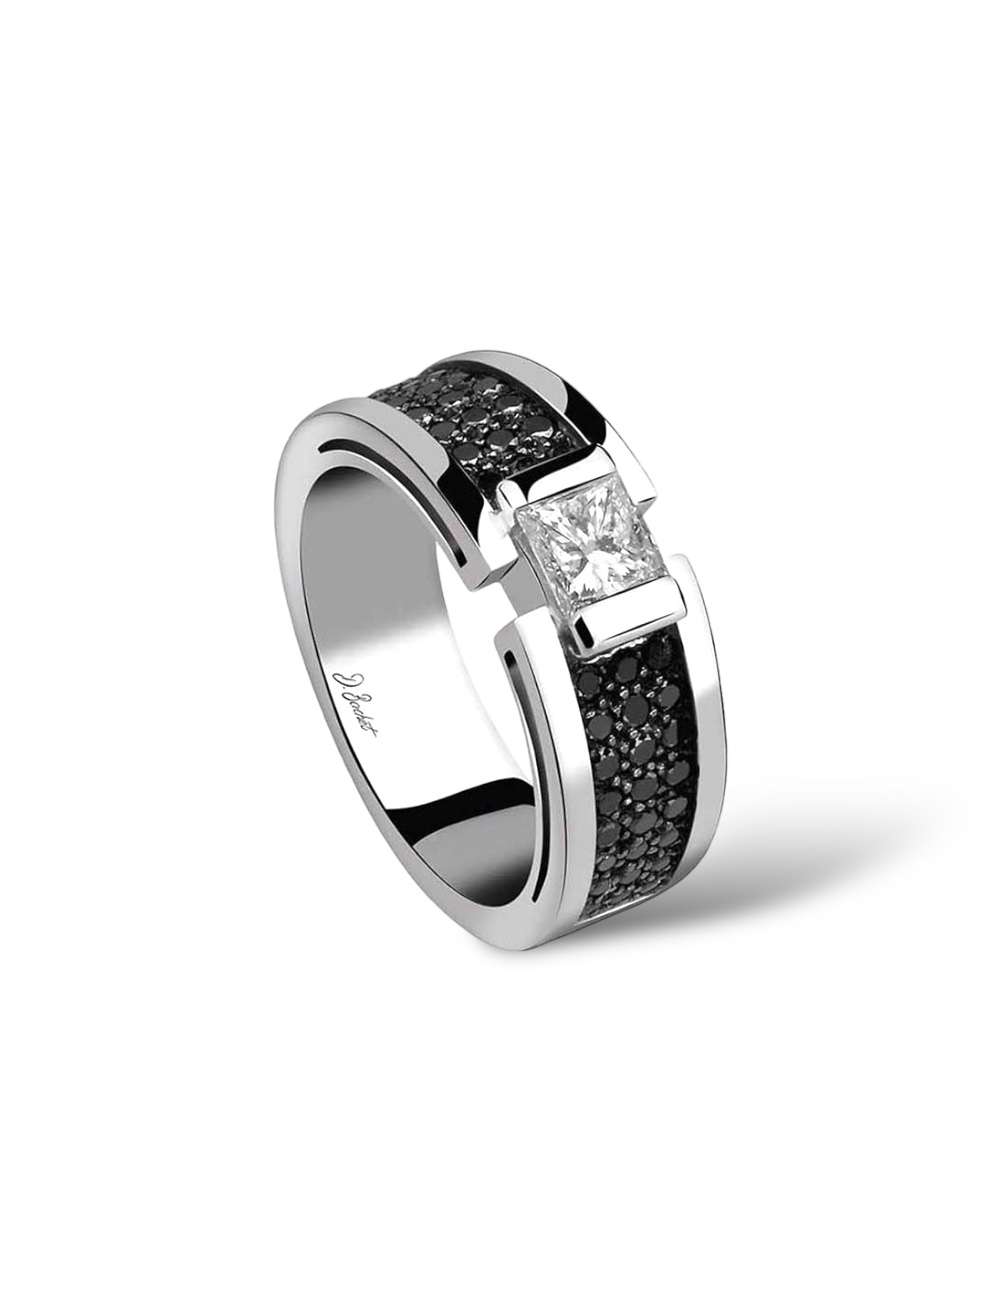 Solitaire de luxe 0.50ct diamant blanc taille princesse, platine et diamants noirs pour élégance moderne.